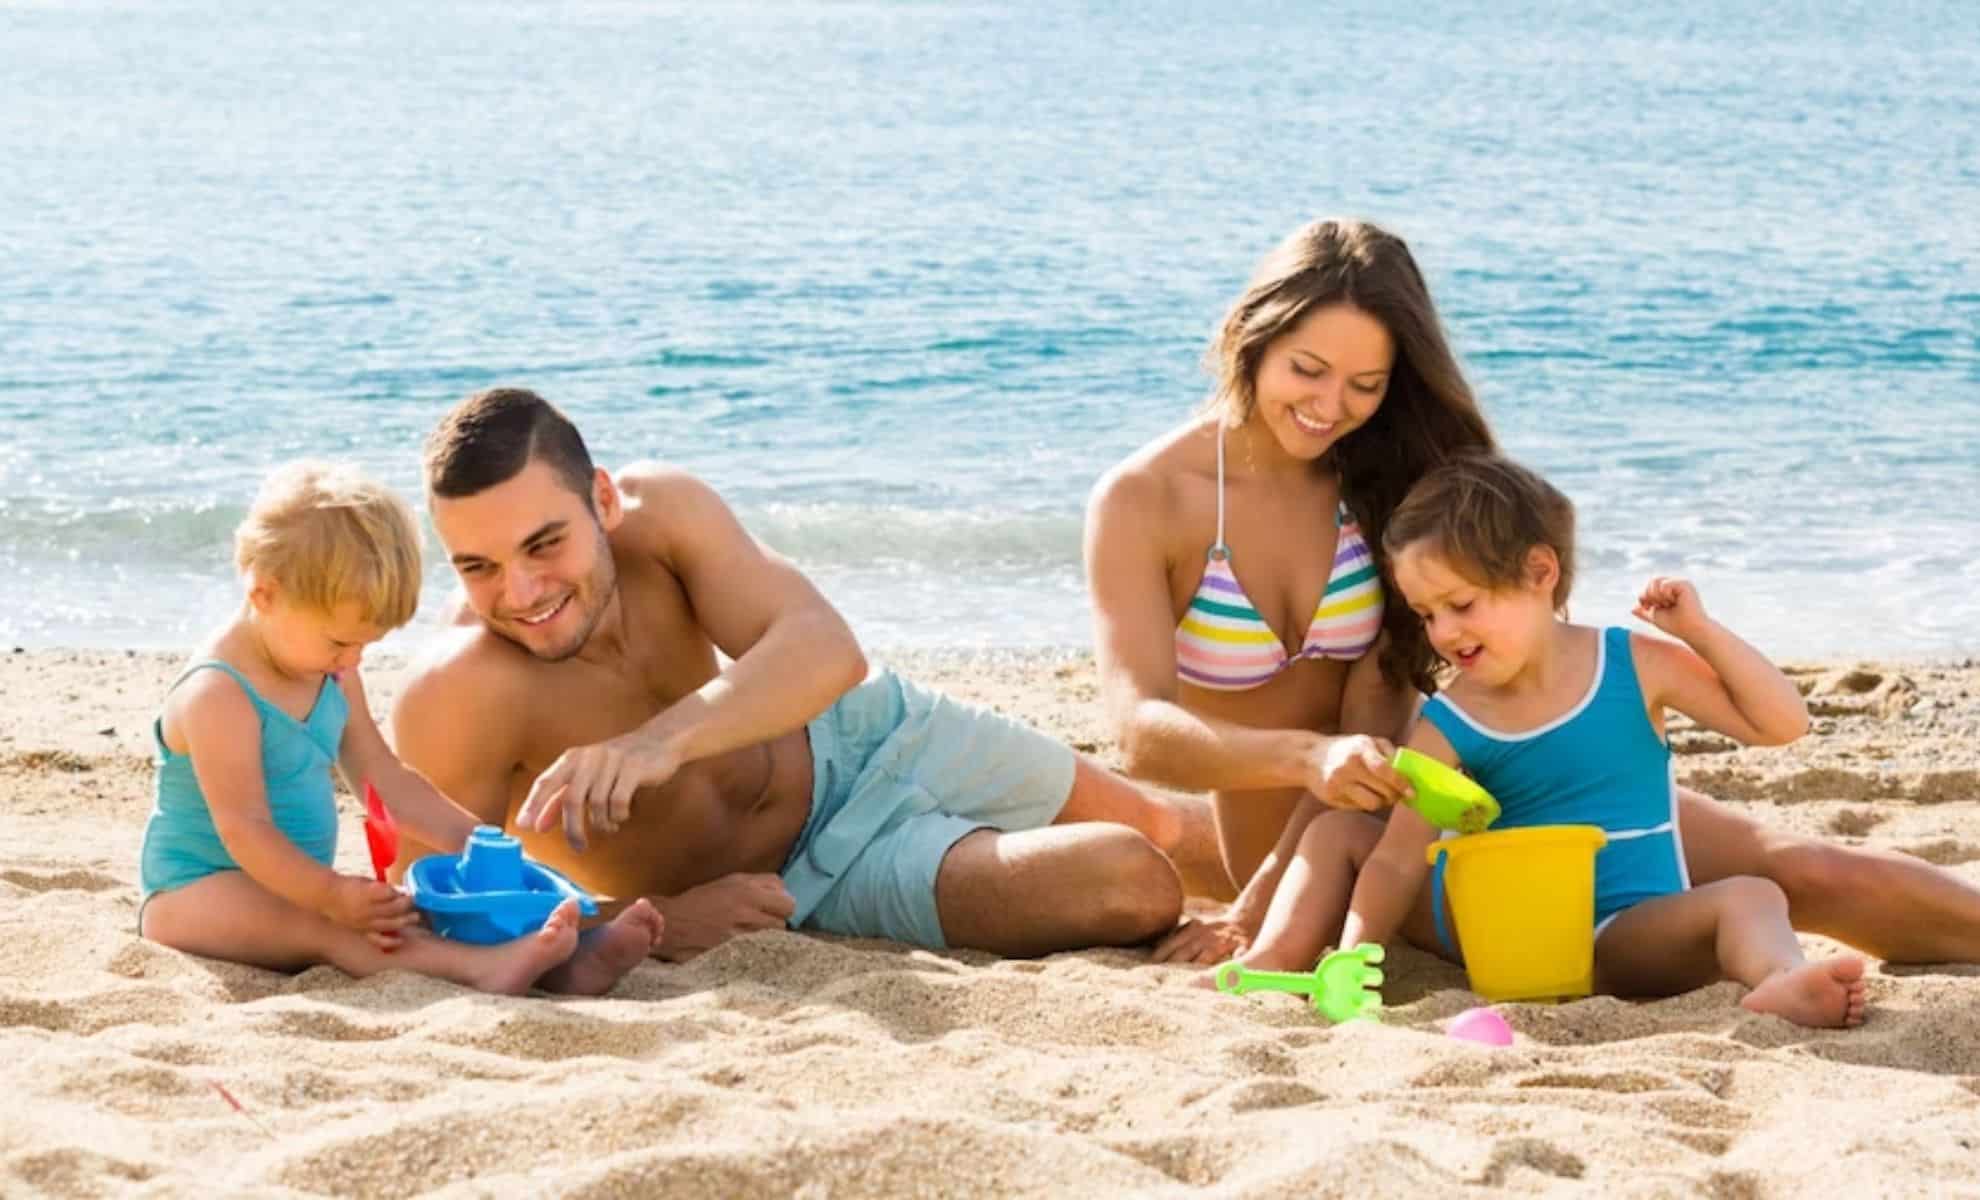 Comment profiter des vacances sans se ruiner : six conseils pour contrôler vos dépenses